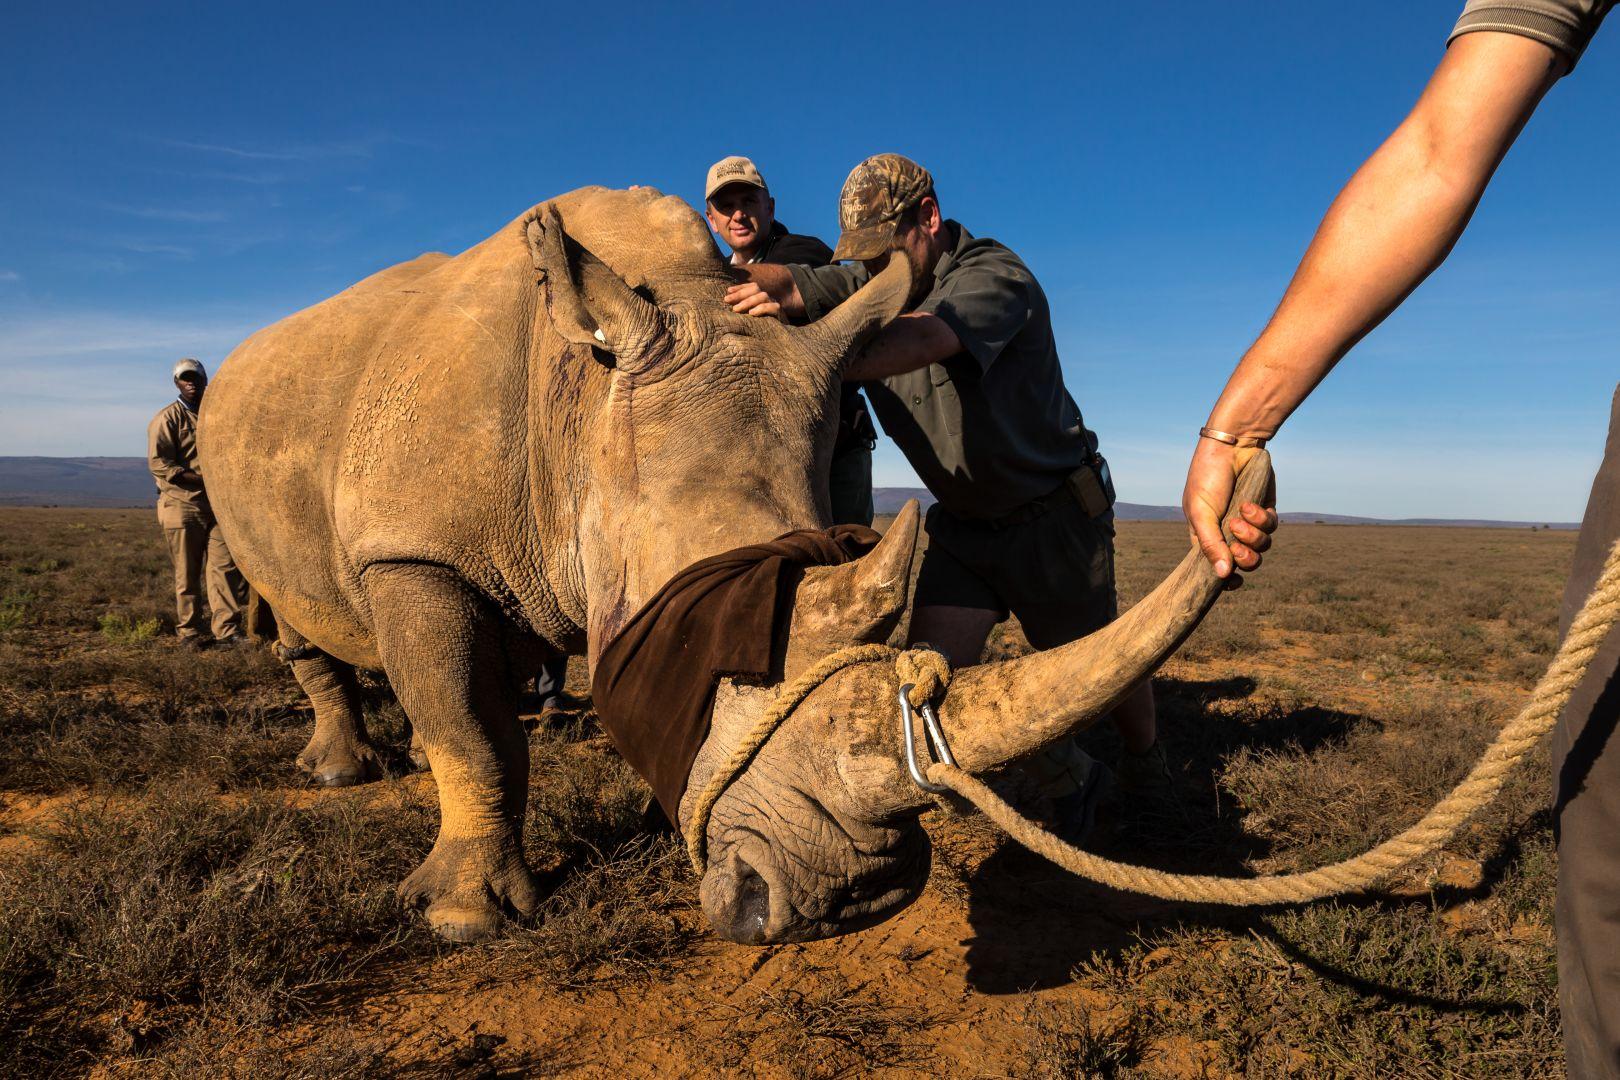 الجائزة الأولى - محاربة وحيد القرن بجنوب أفريقيا- قصة مصورة